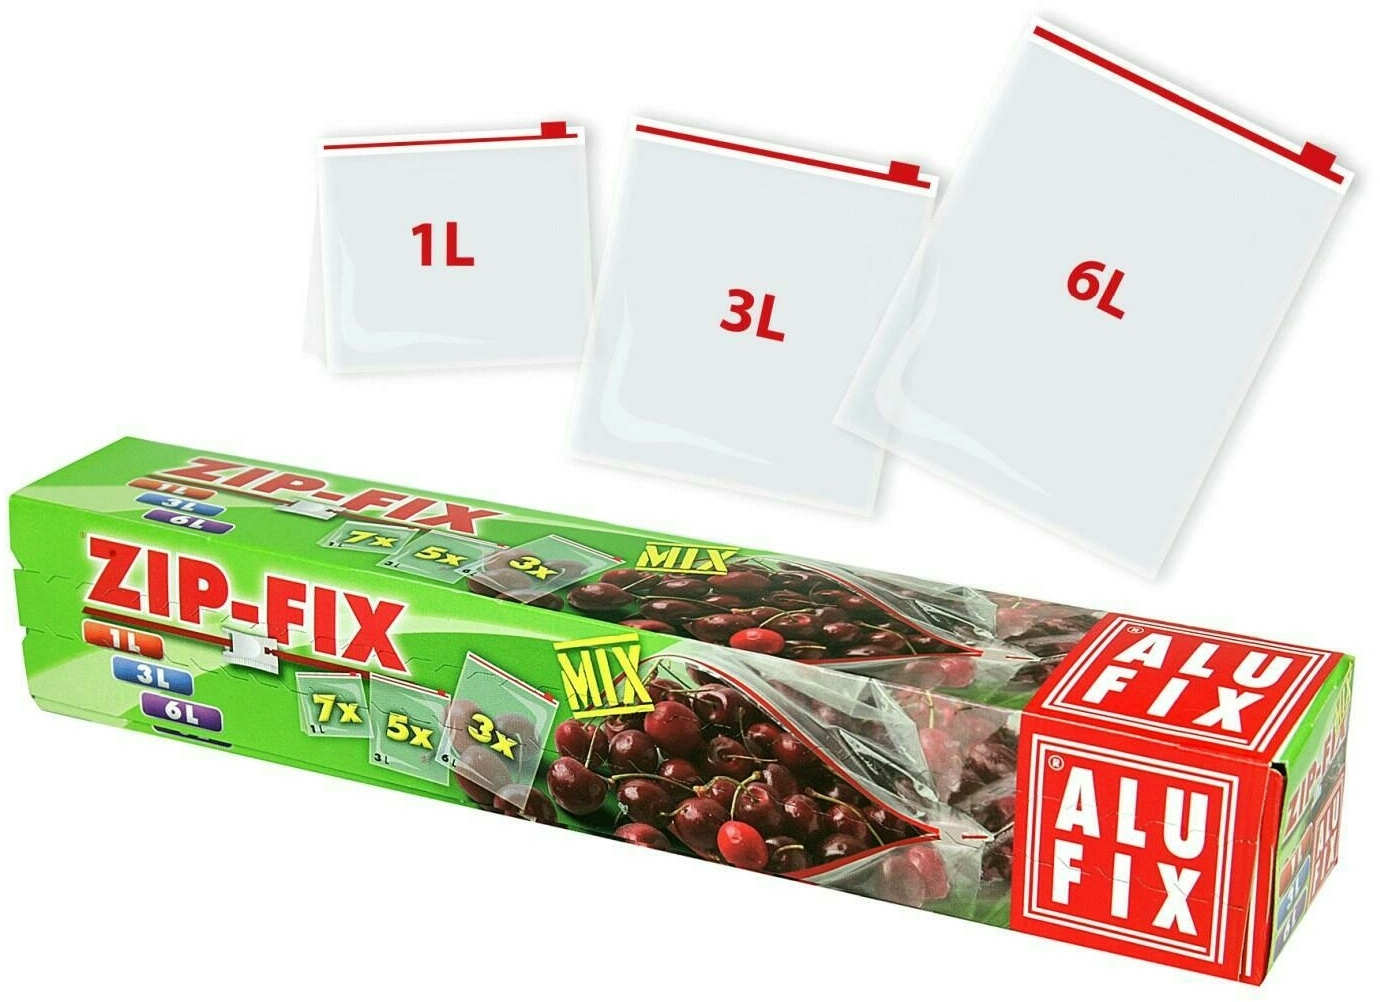 30x ALUFIX Tiefkühlsäcke Haushaltsäcke mit Zipp 1liter 3liter und 6liter